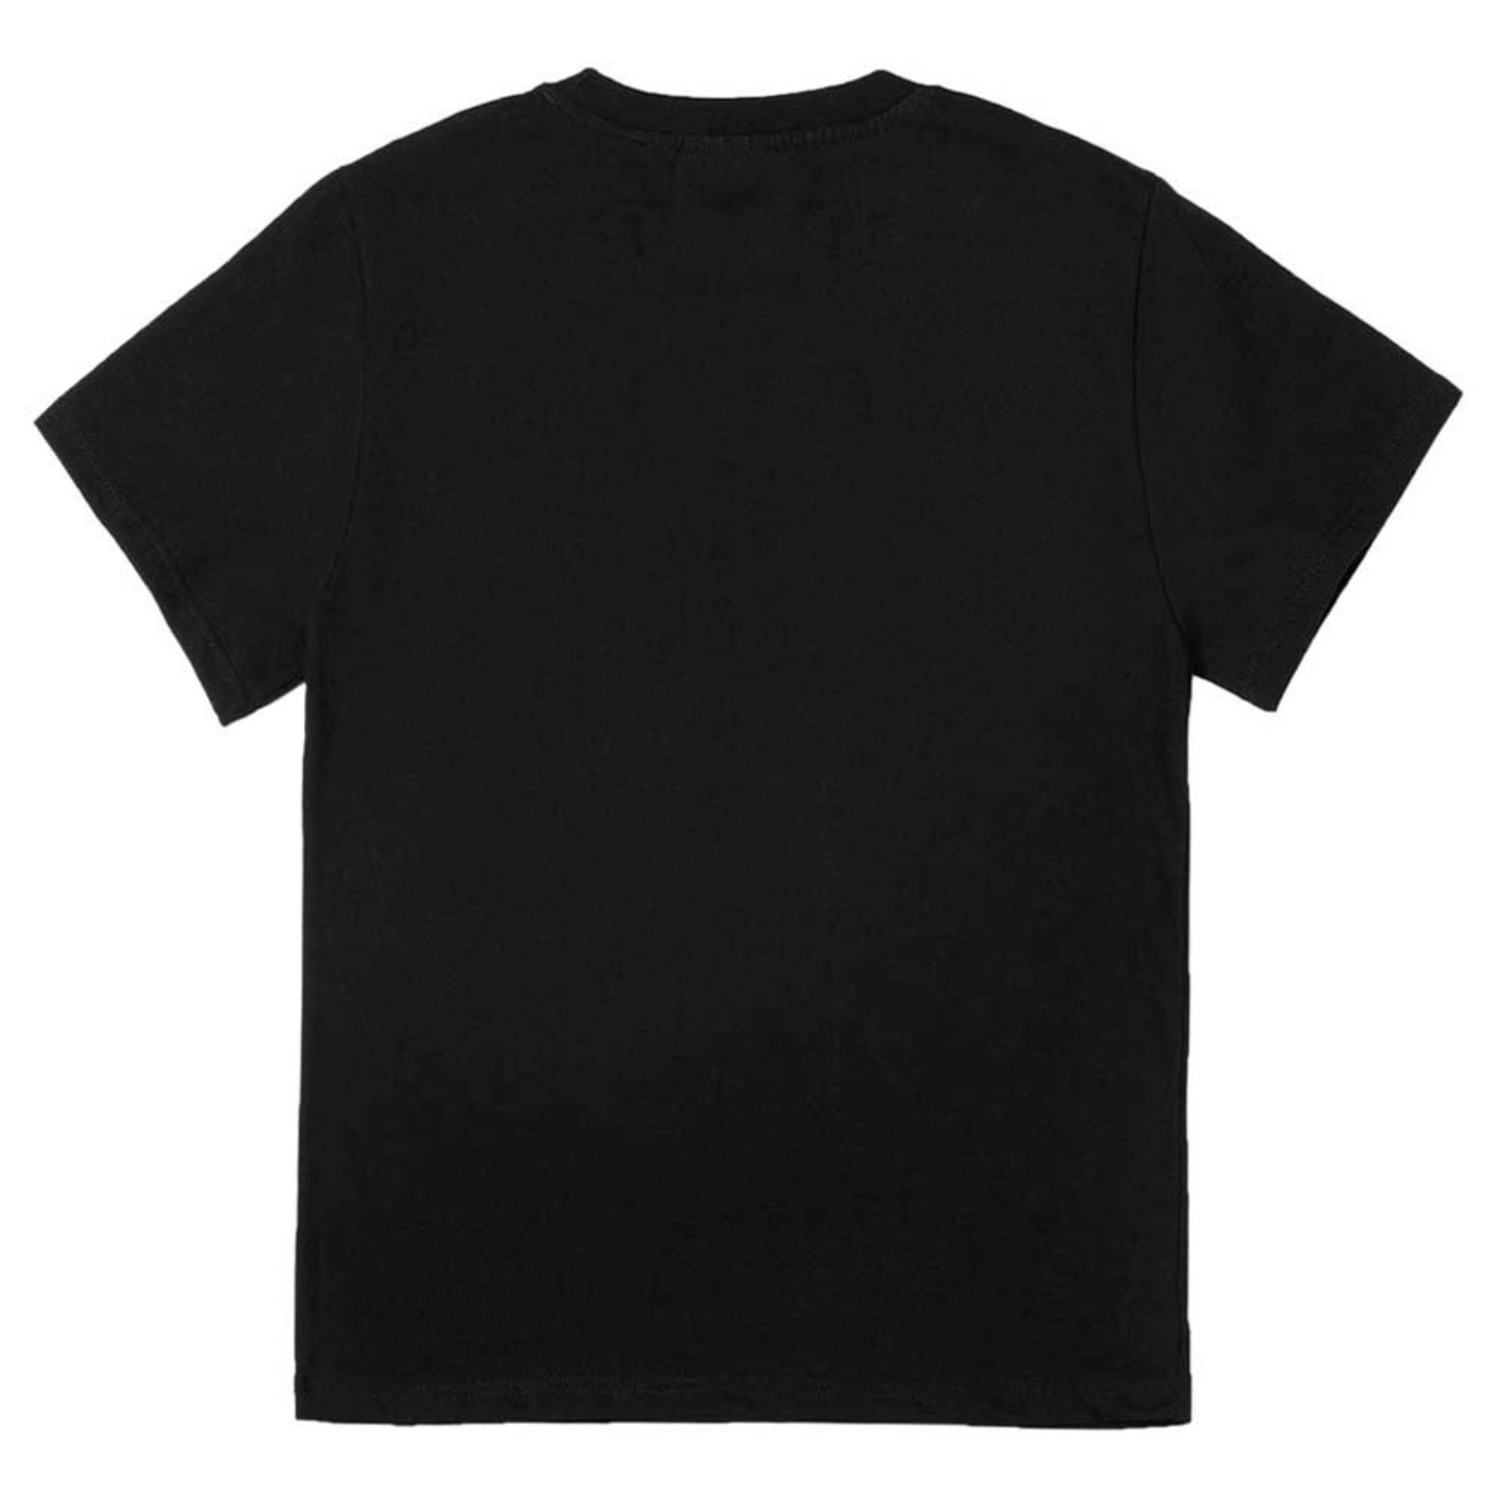 참잘했어요 반팔티셔츠 블랙 The Best Standard-fit short sleeve T-shirts (Black)